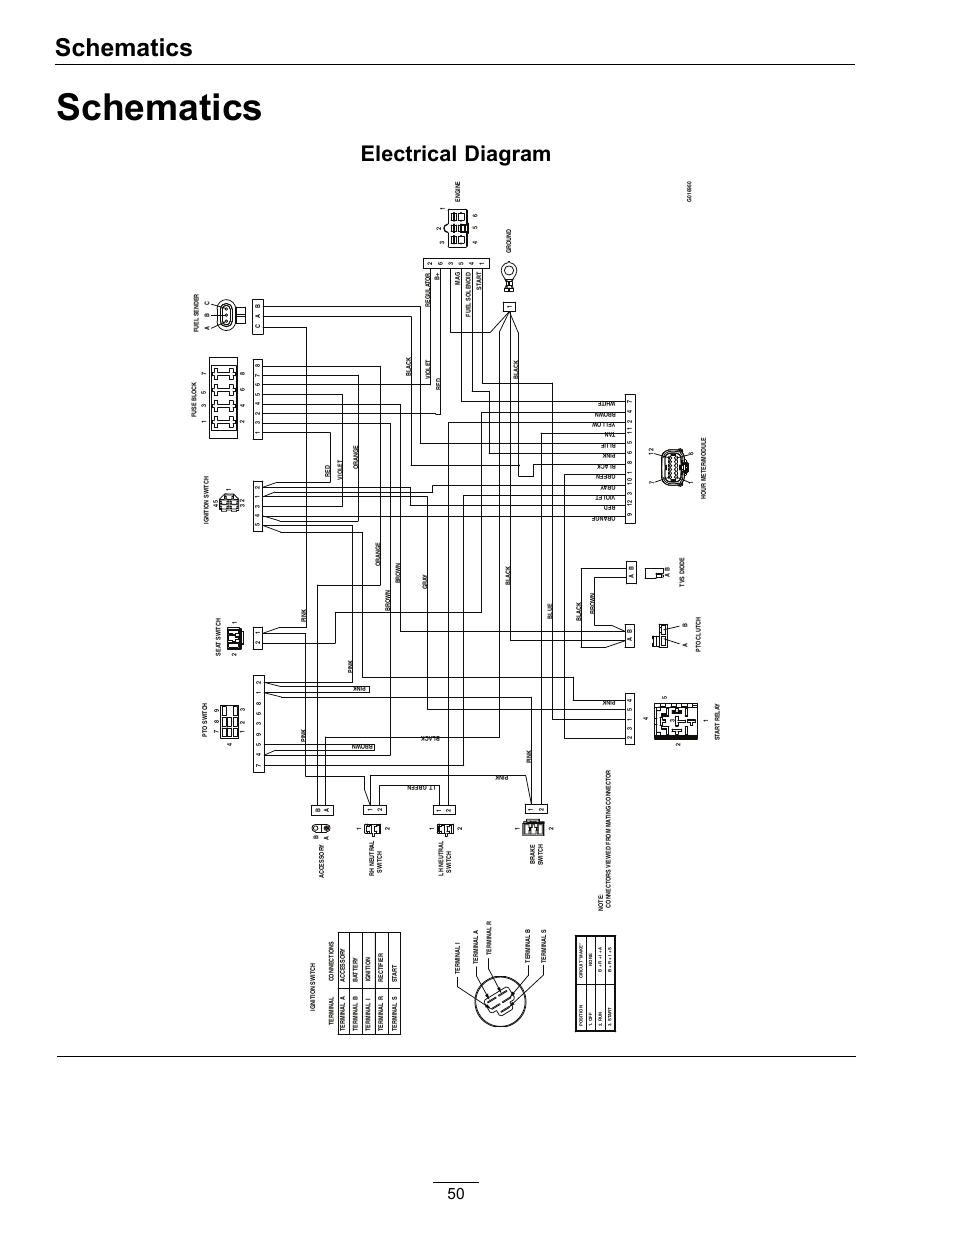 ubitx wiring diagram